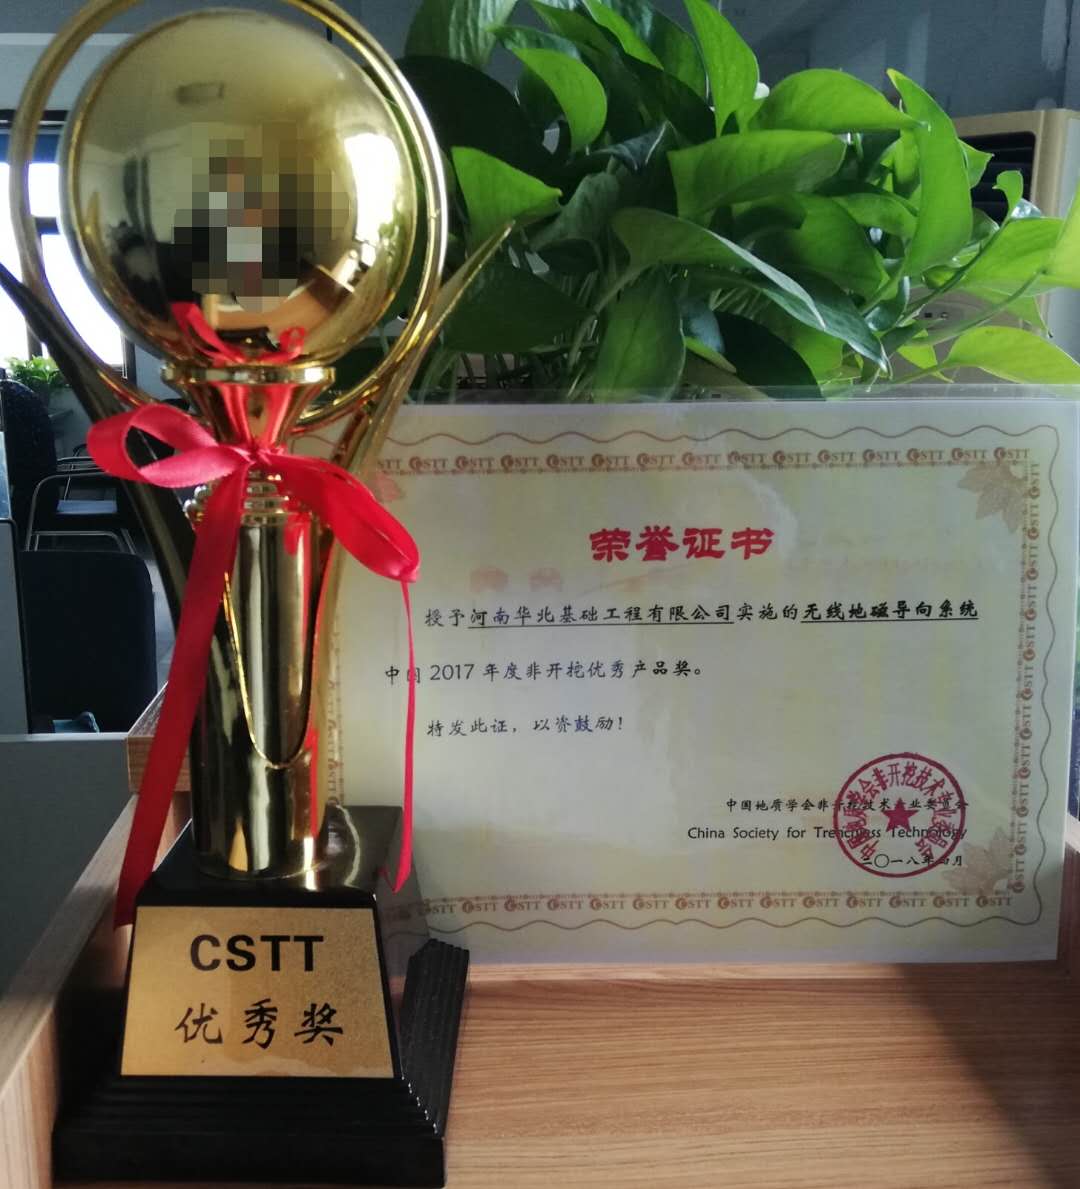 祝贺我公司CDY无线地磁导向仪获得优秀产品奖项